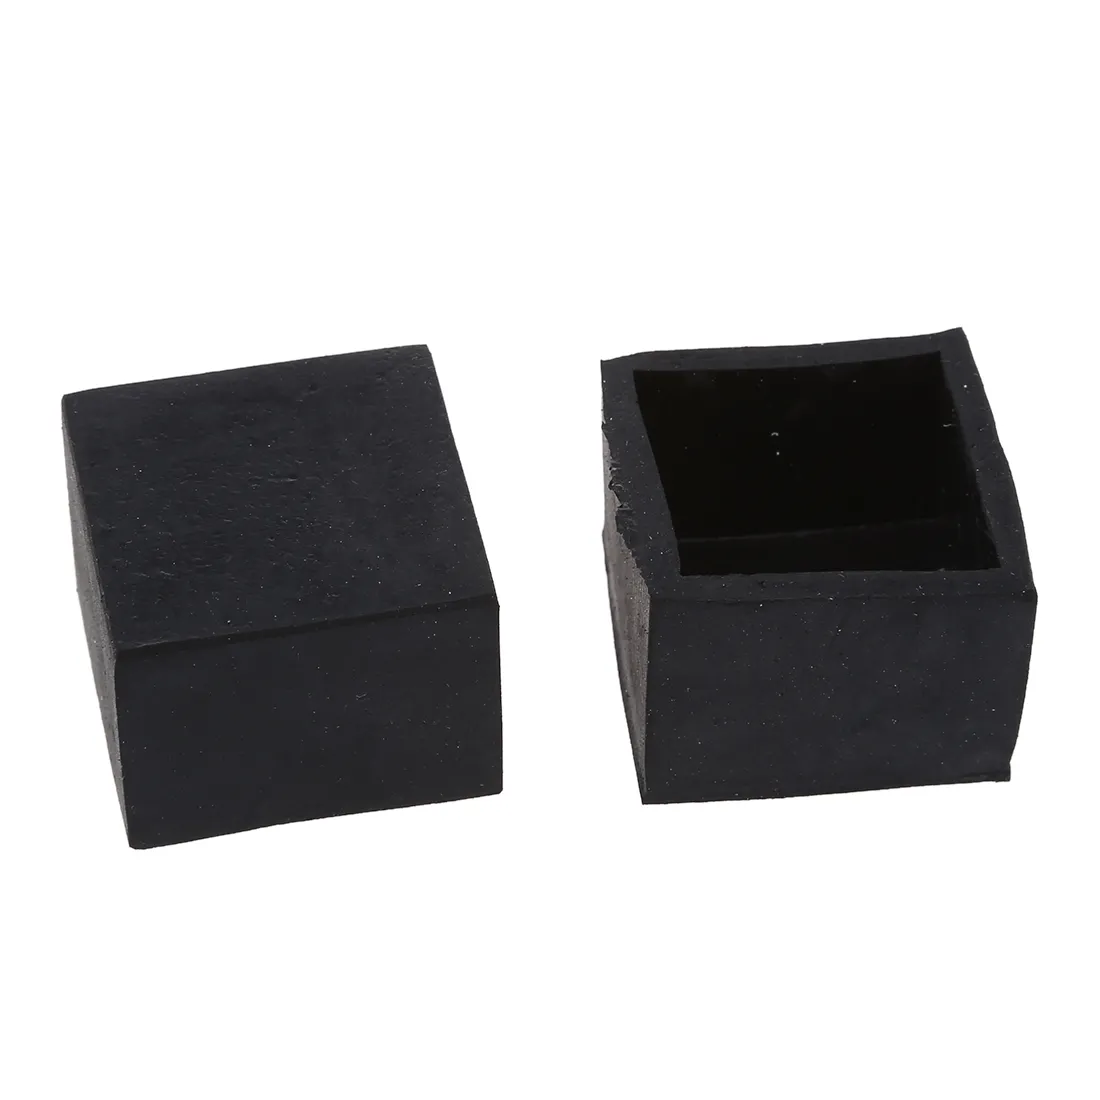 4 Stück schwarze Gummi-Fußabdeckungen für Stuhl- und Tischbeine, 28 mm x 28 mm